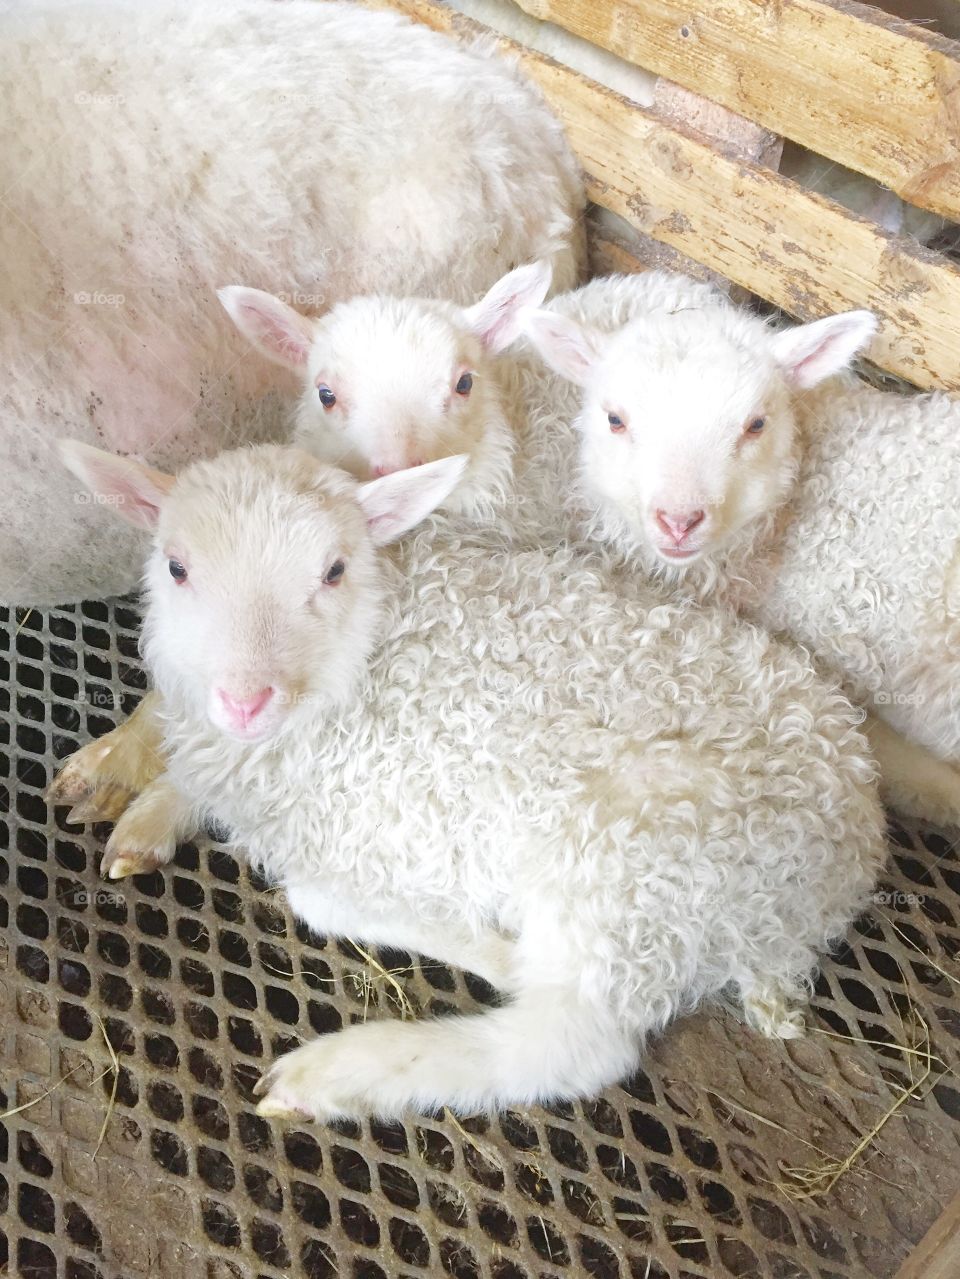 Cute lambs relaxing